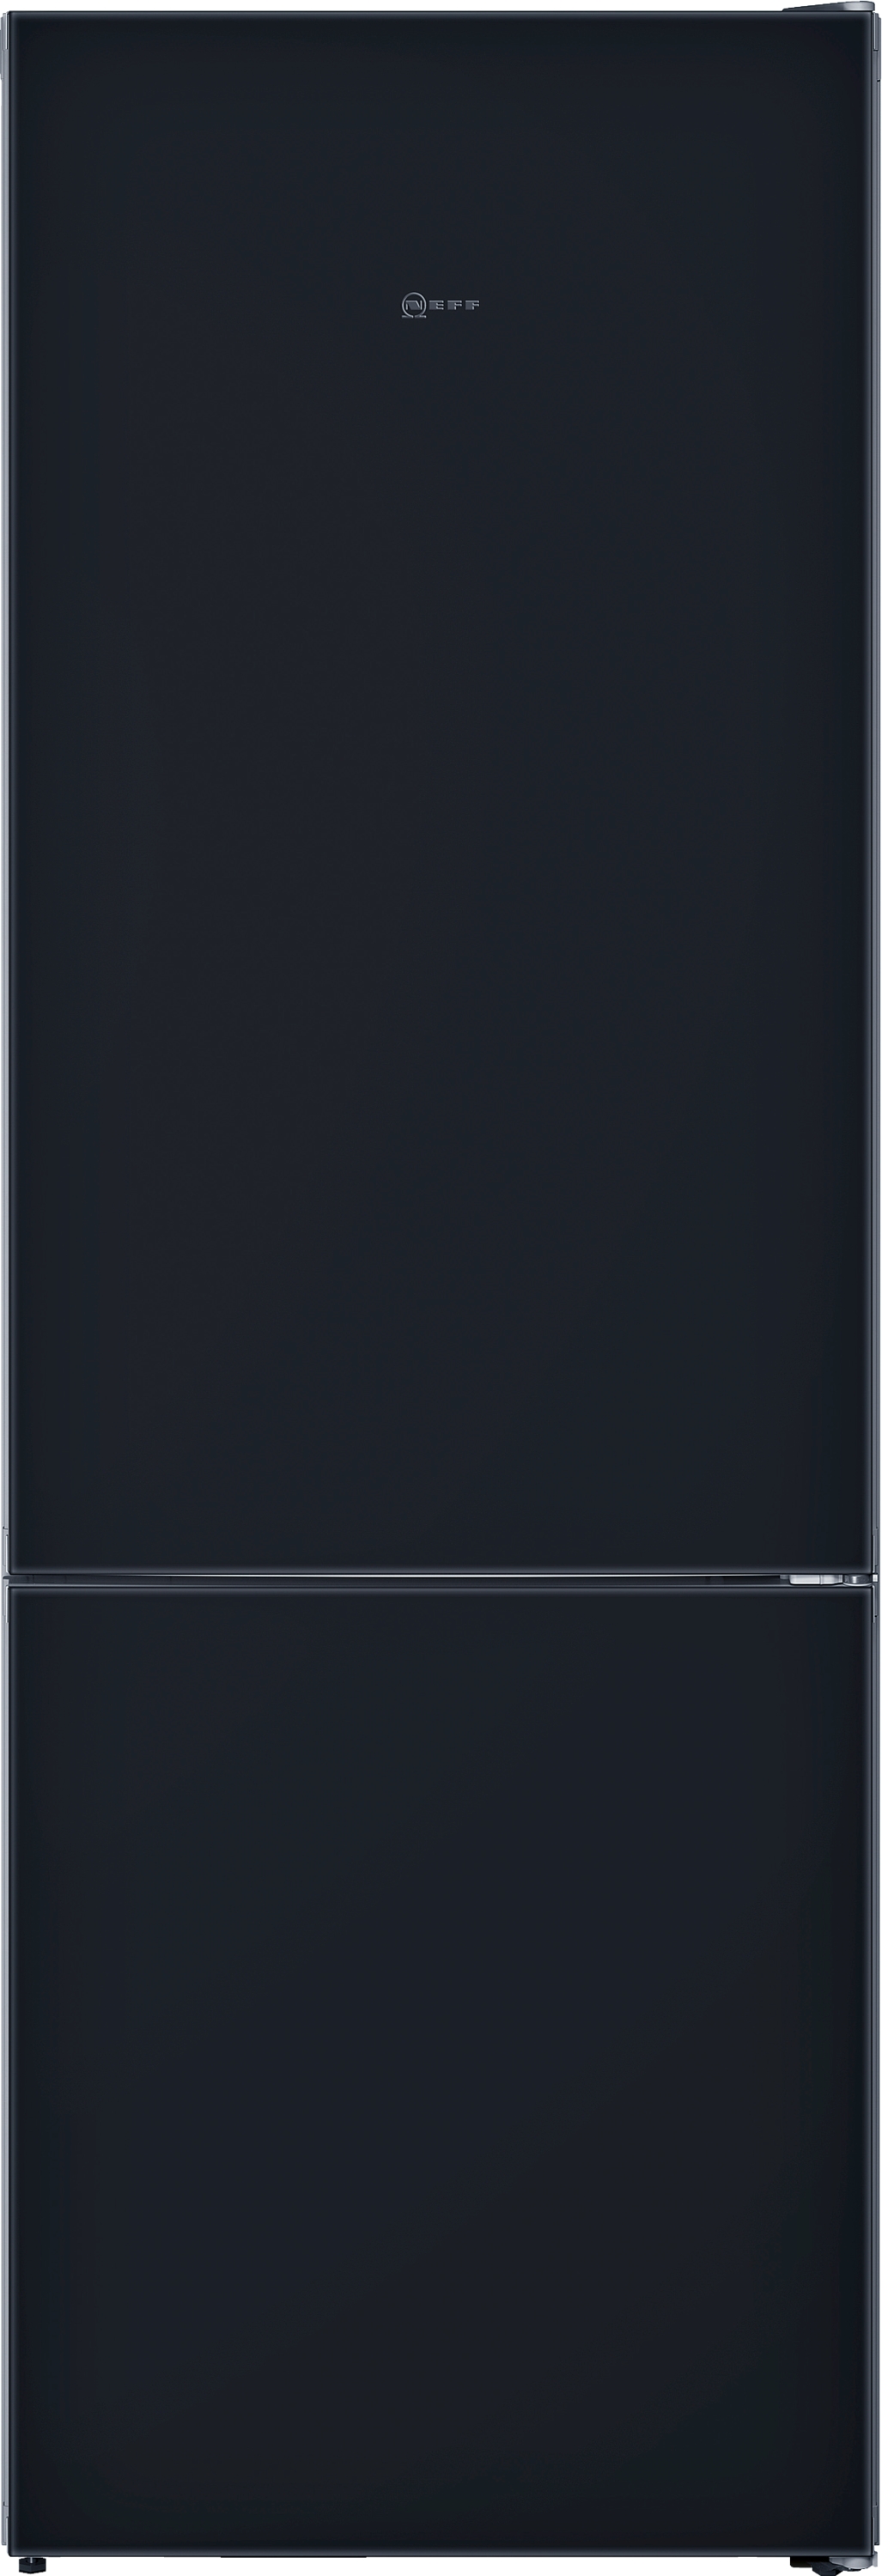 KG7493BD0  Combină frigorifică independentă 203 x 70 cm Negru,  5 ANI GARANTIE